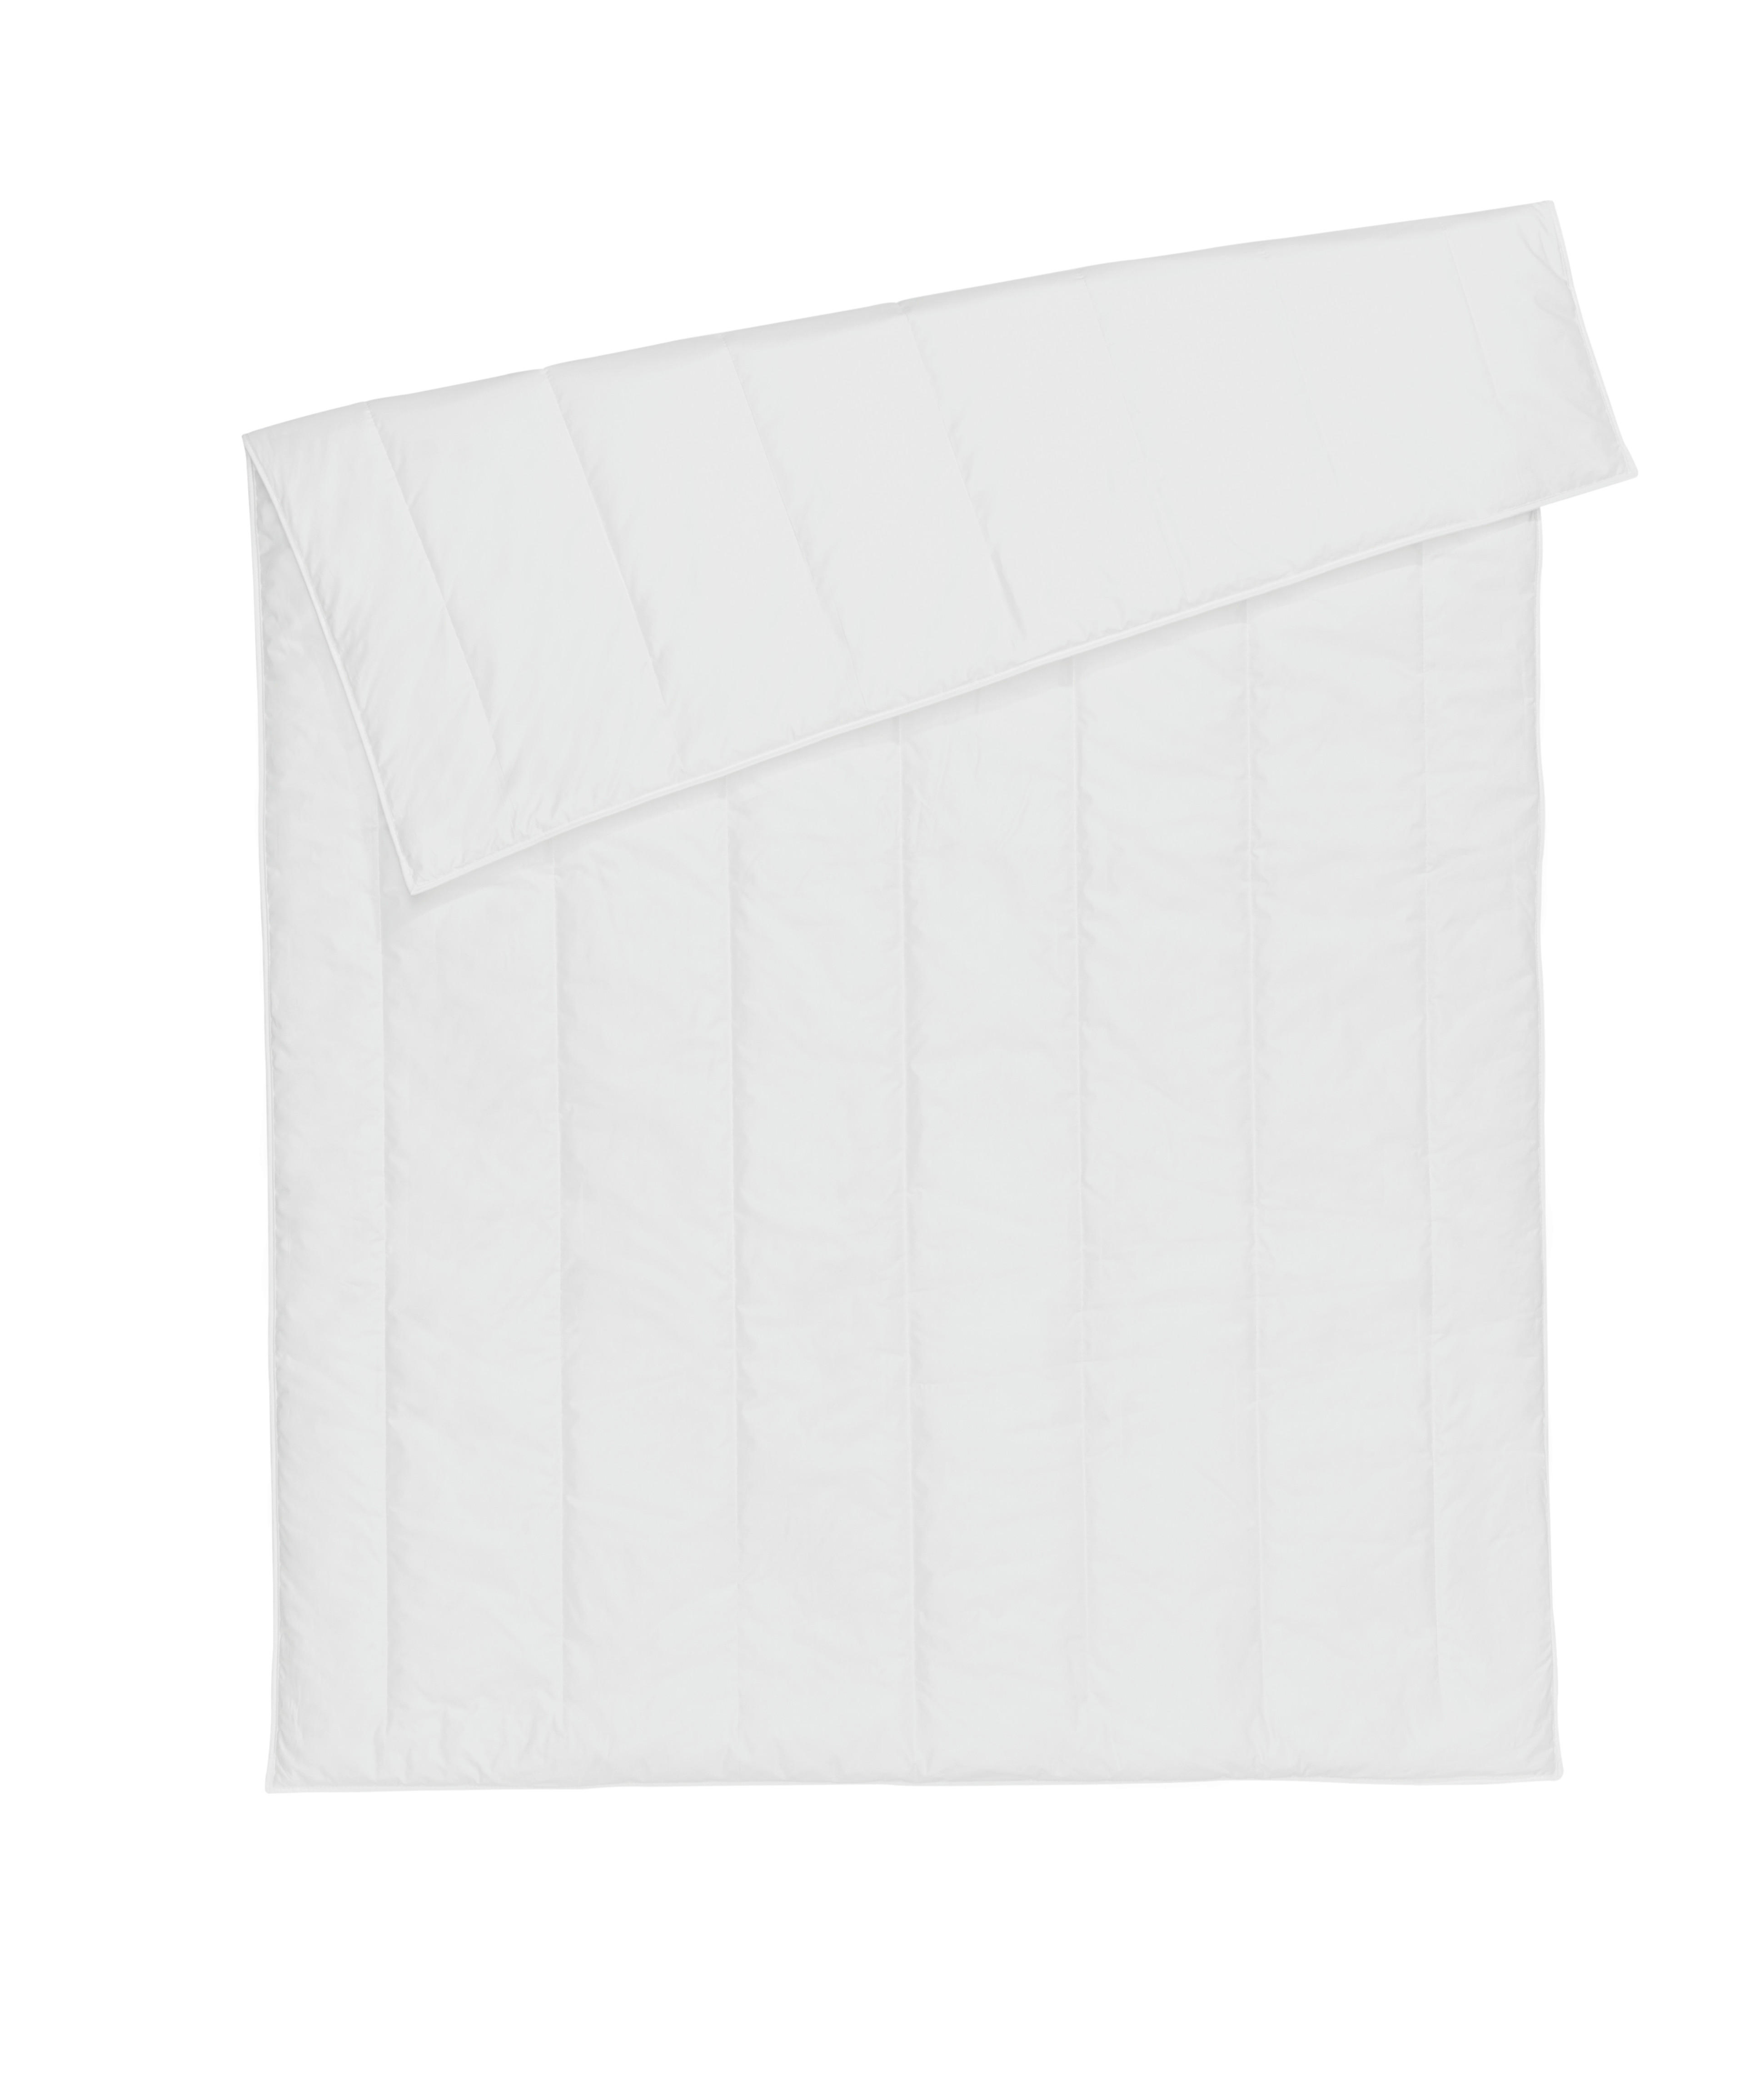 WINTERDECKE 135/200 cm Allergo Protect  - Weiß, Basics, Textil (135/200cm) - Centa-Star